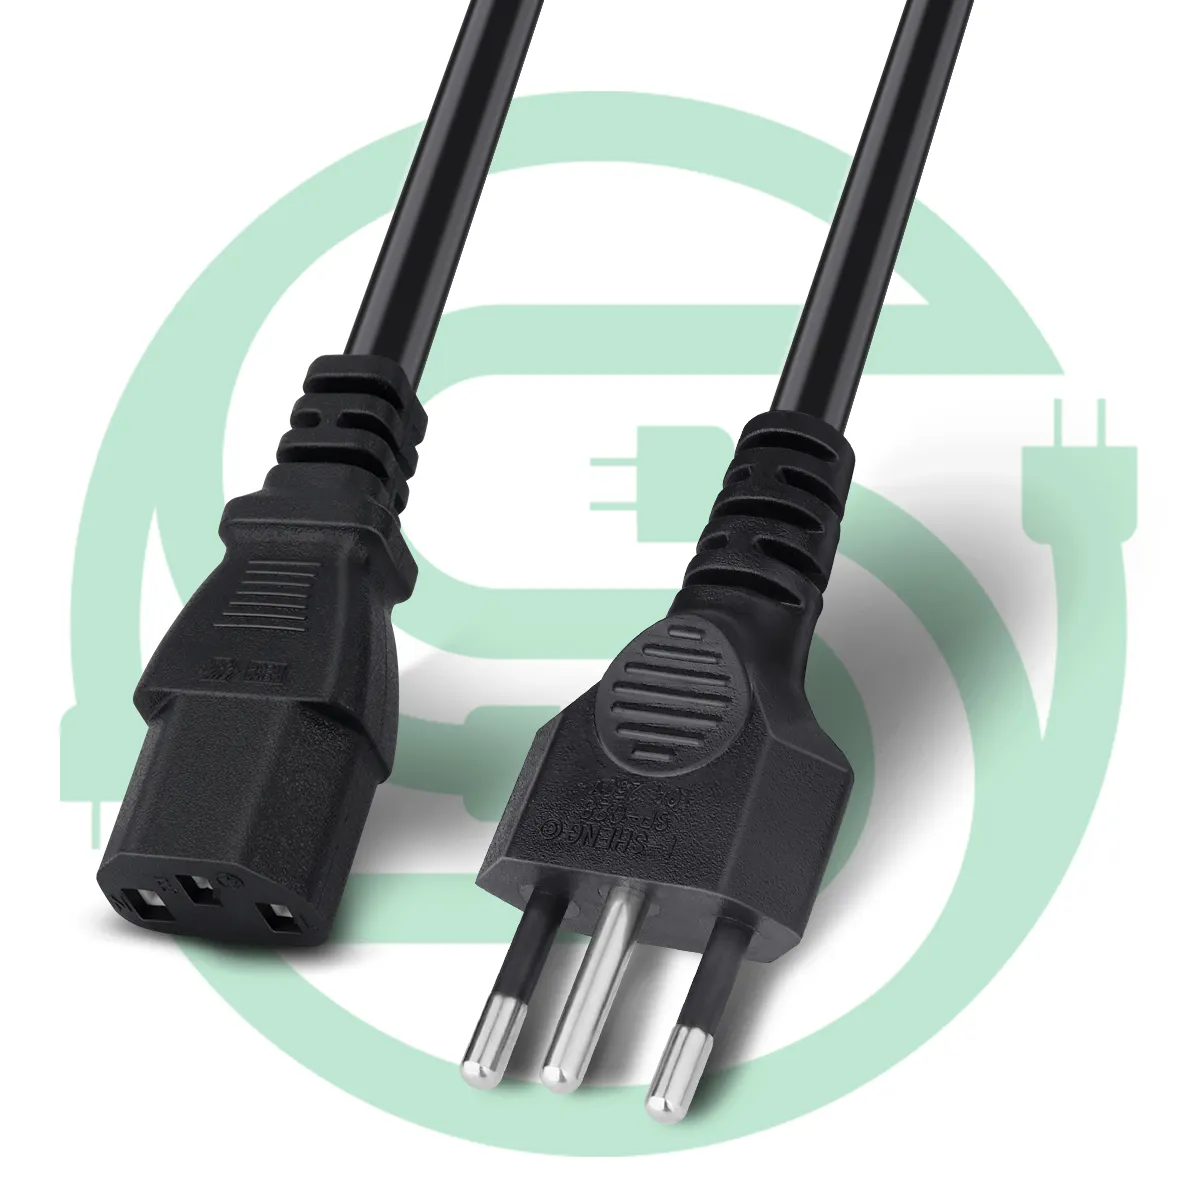 Kabel listrik C13 3 colokan standar Brasil kabel listrik konsumen elektronik Brasil steker kabel daya Desktop